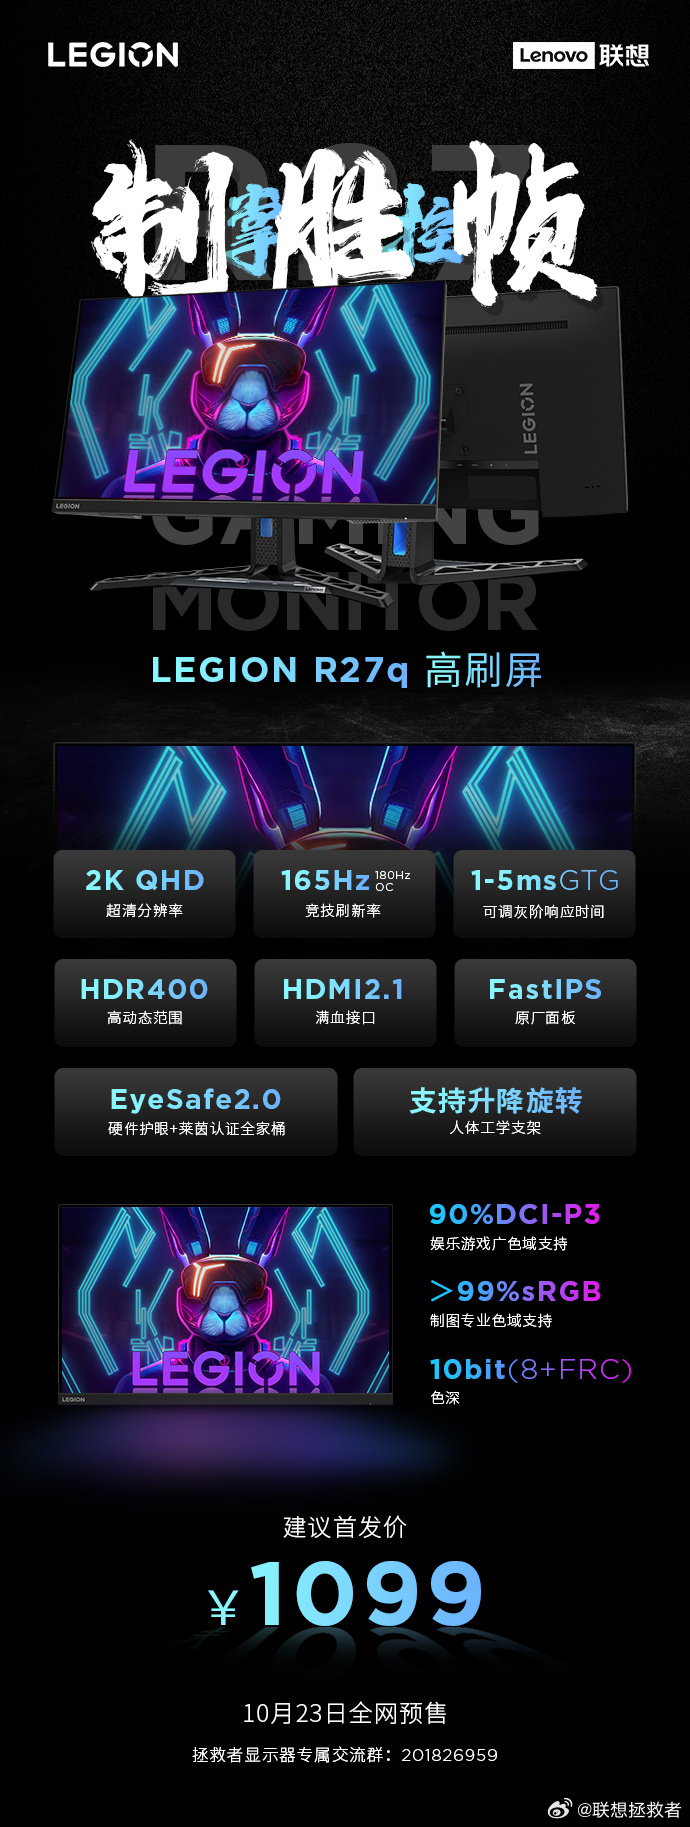 Lenovo_Legion_R27q_29fa4b.jpg